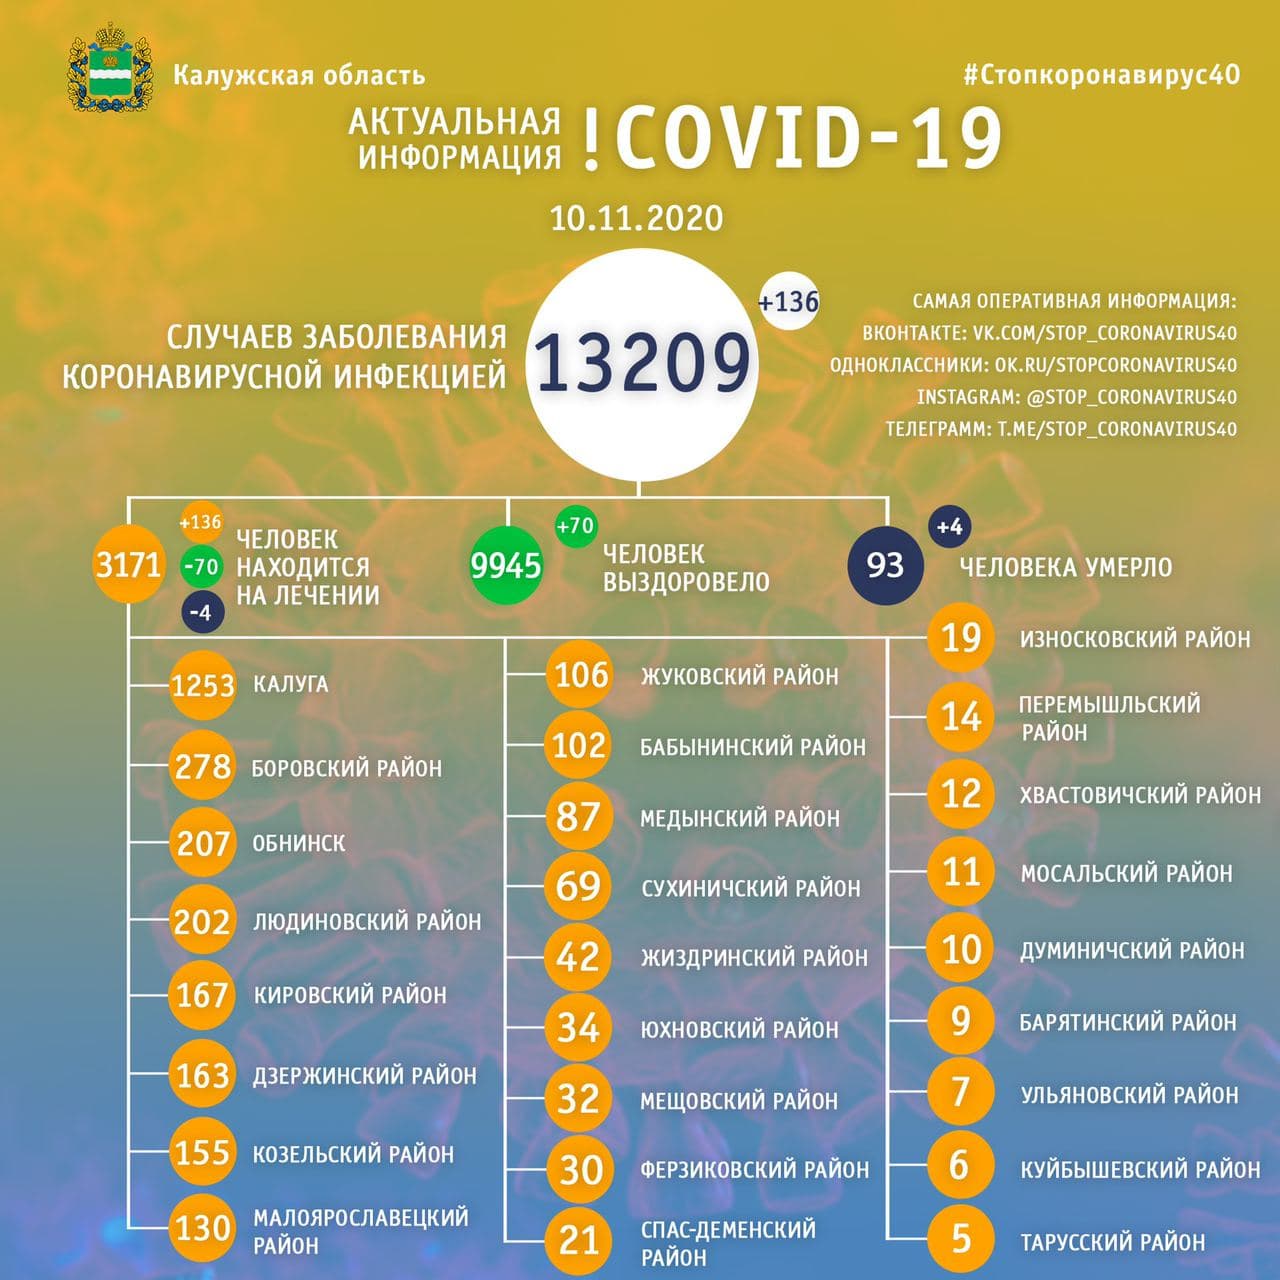 Официальная статистика по коронавирусу в Калужской области на 10 ноября 2020 года.